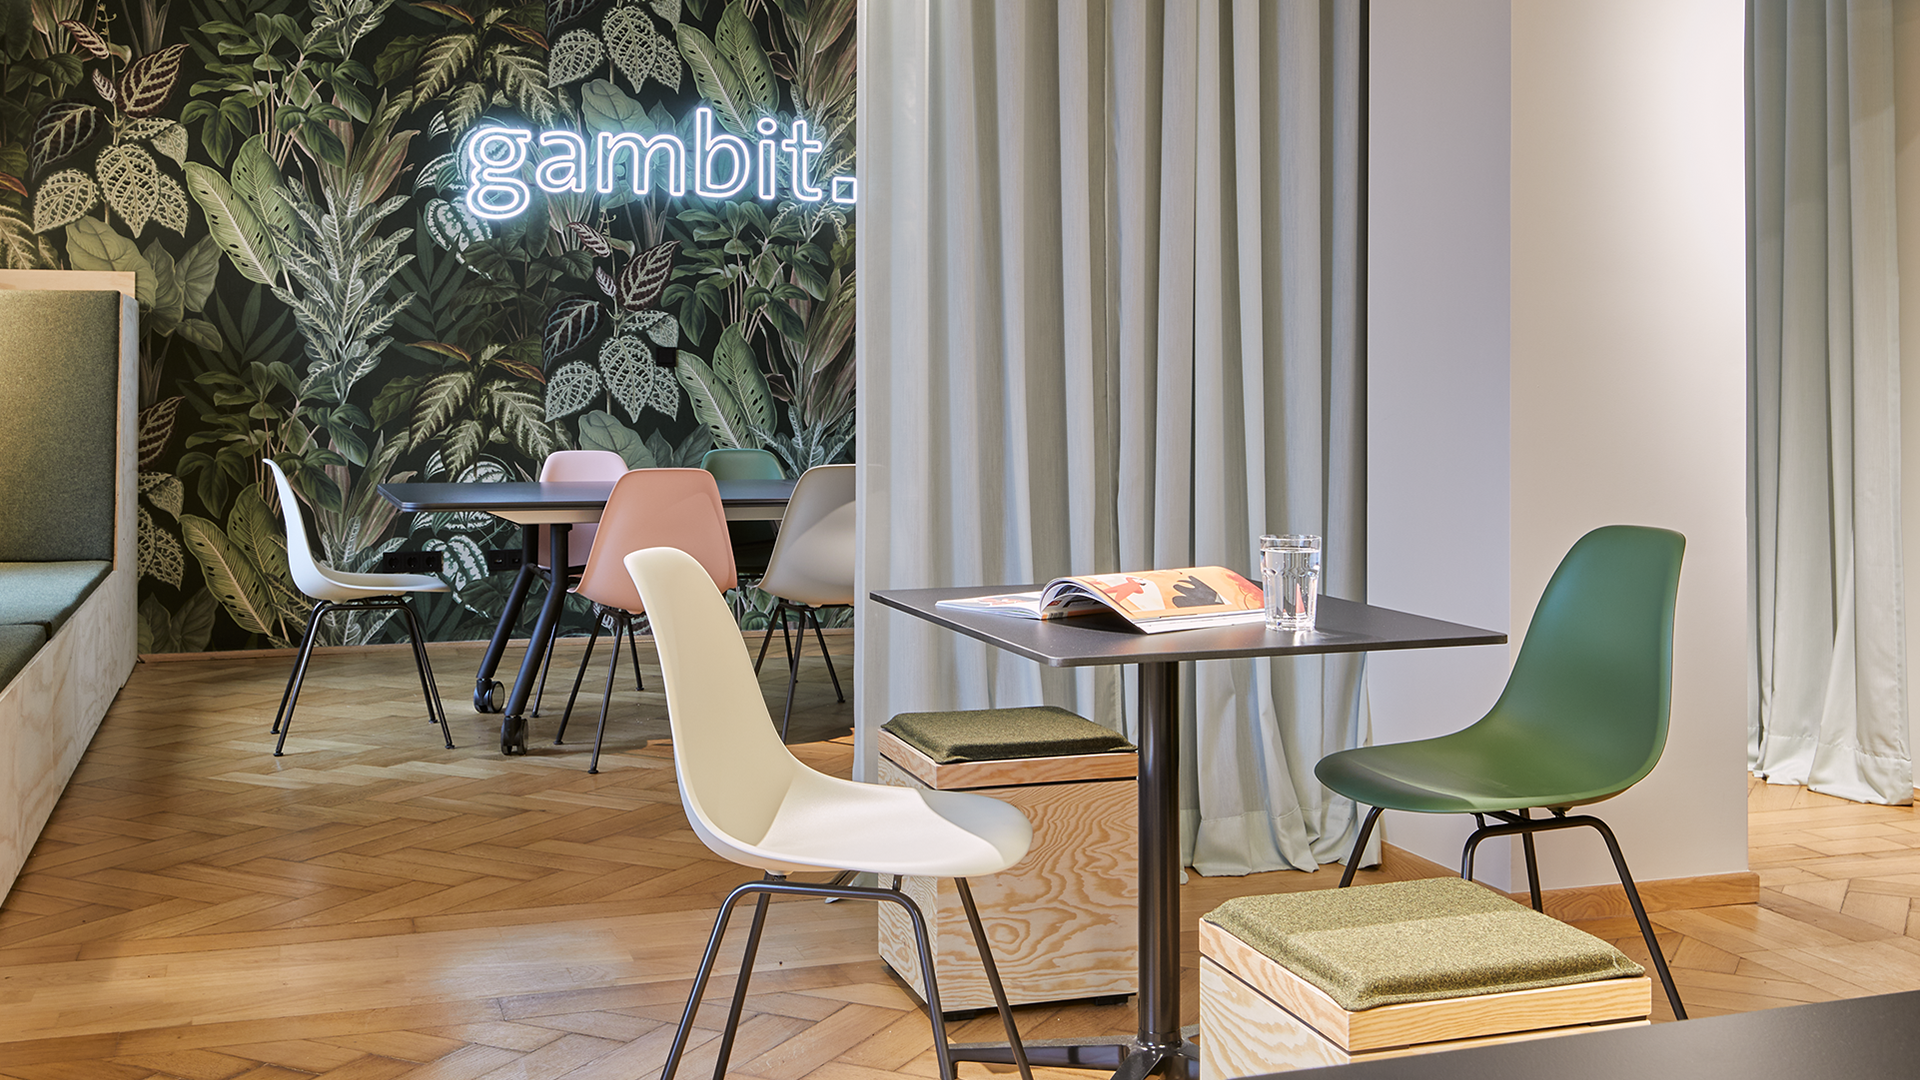 Die Dortmunder Marketingagentur gambit hat ihre Räume radikal umgebaut | Innenarchitektur